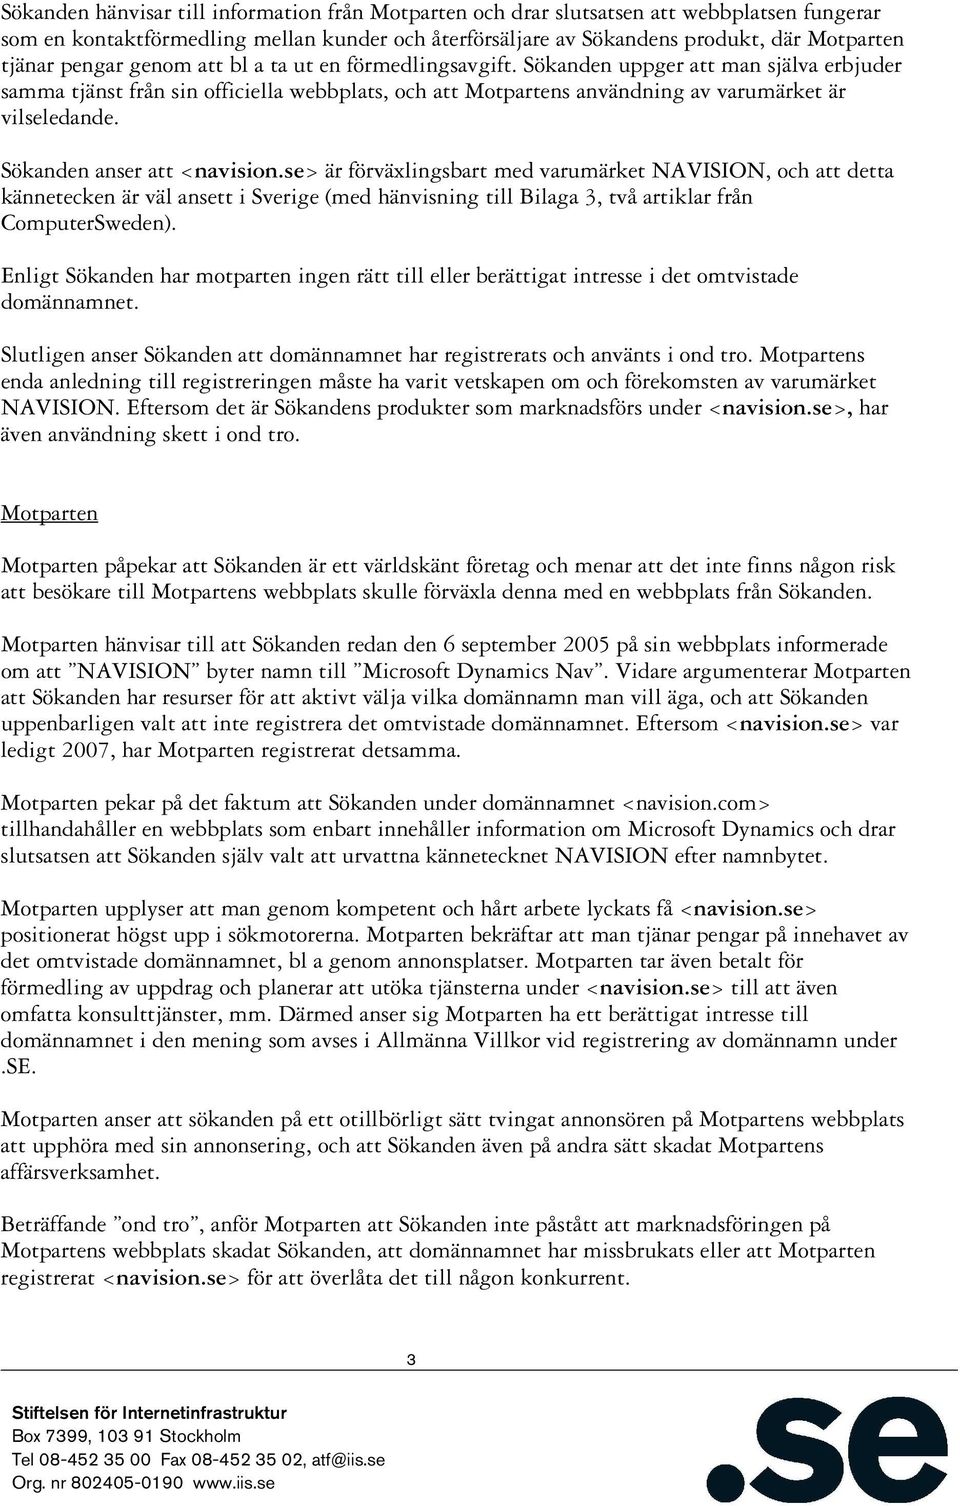 Sökanden anser att <navision.se> är förväxlingsbart med varumärket NAVISION, och att detta kännetecken är väl ansett i Sverige (med hänvisning till Bilaga 3, två artiklar från ComputerSweden).